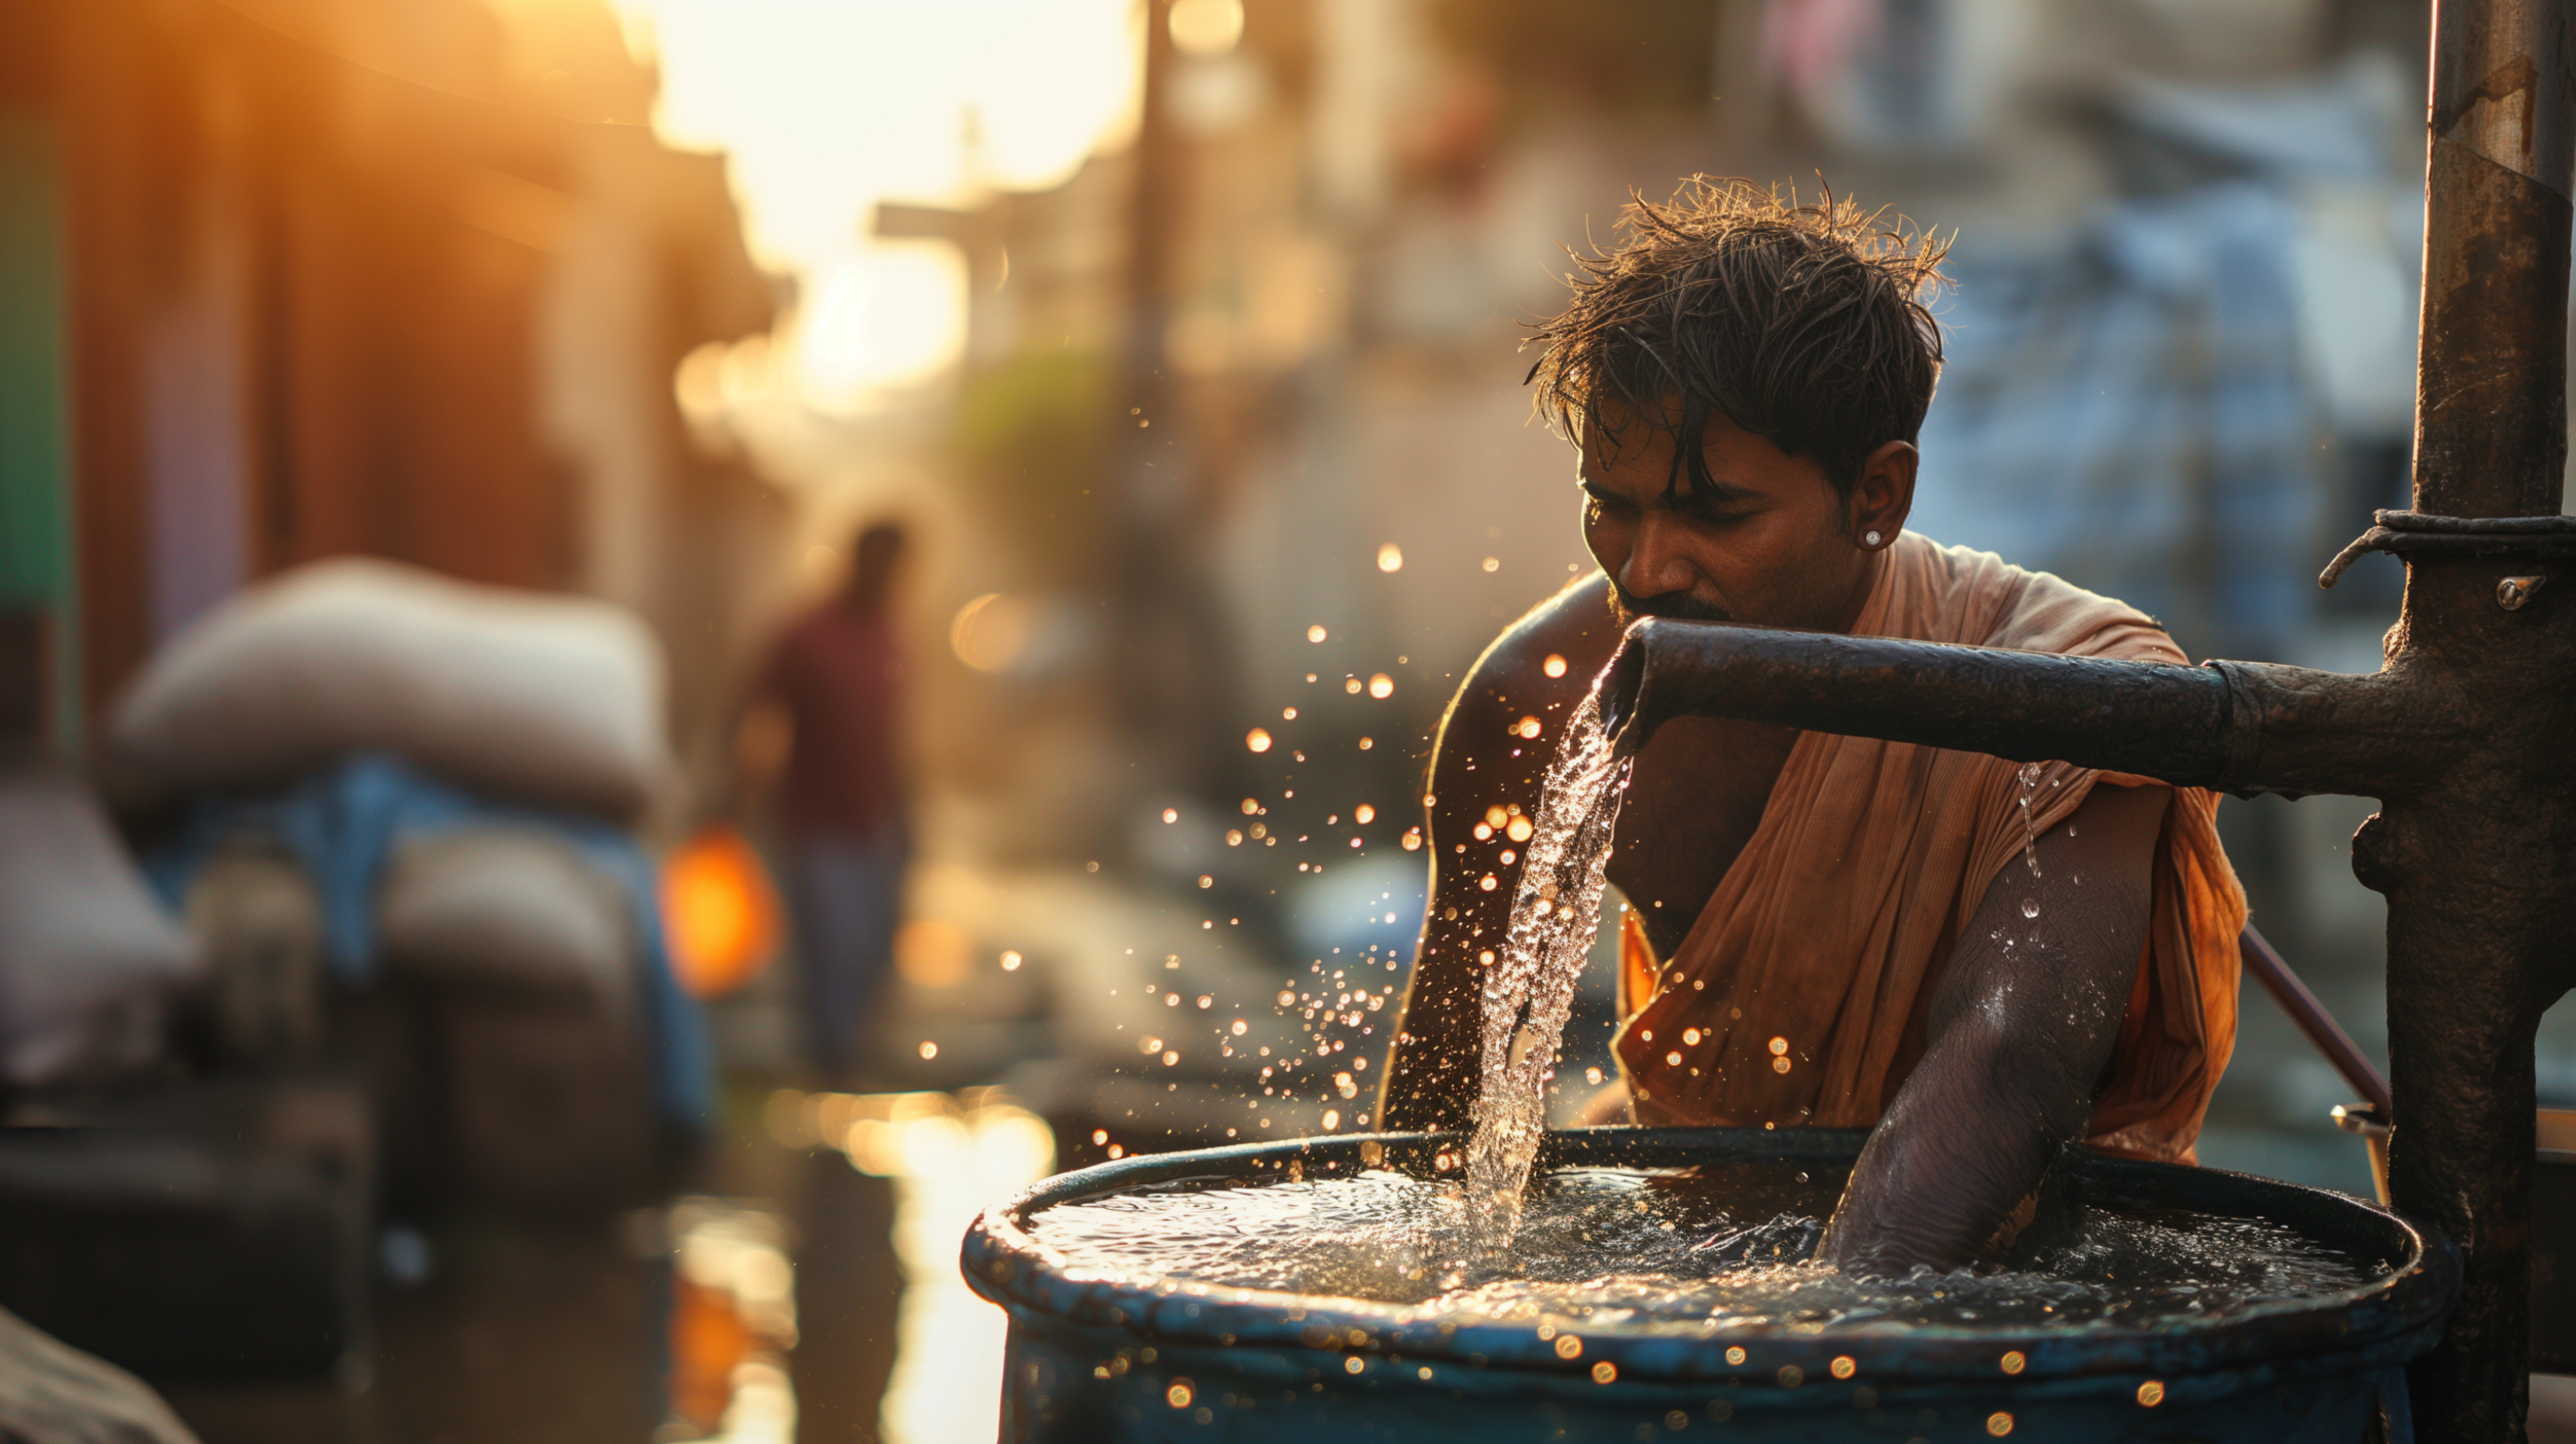 Les autorités indiennes estiment que plusieurs dizaines de millions de personnes manquent d'eau dans le pays. © Buri.a, Adobe Stock